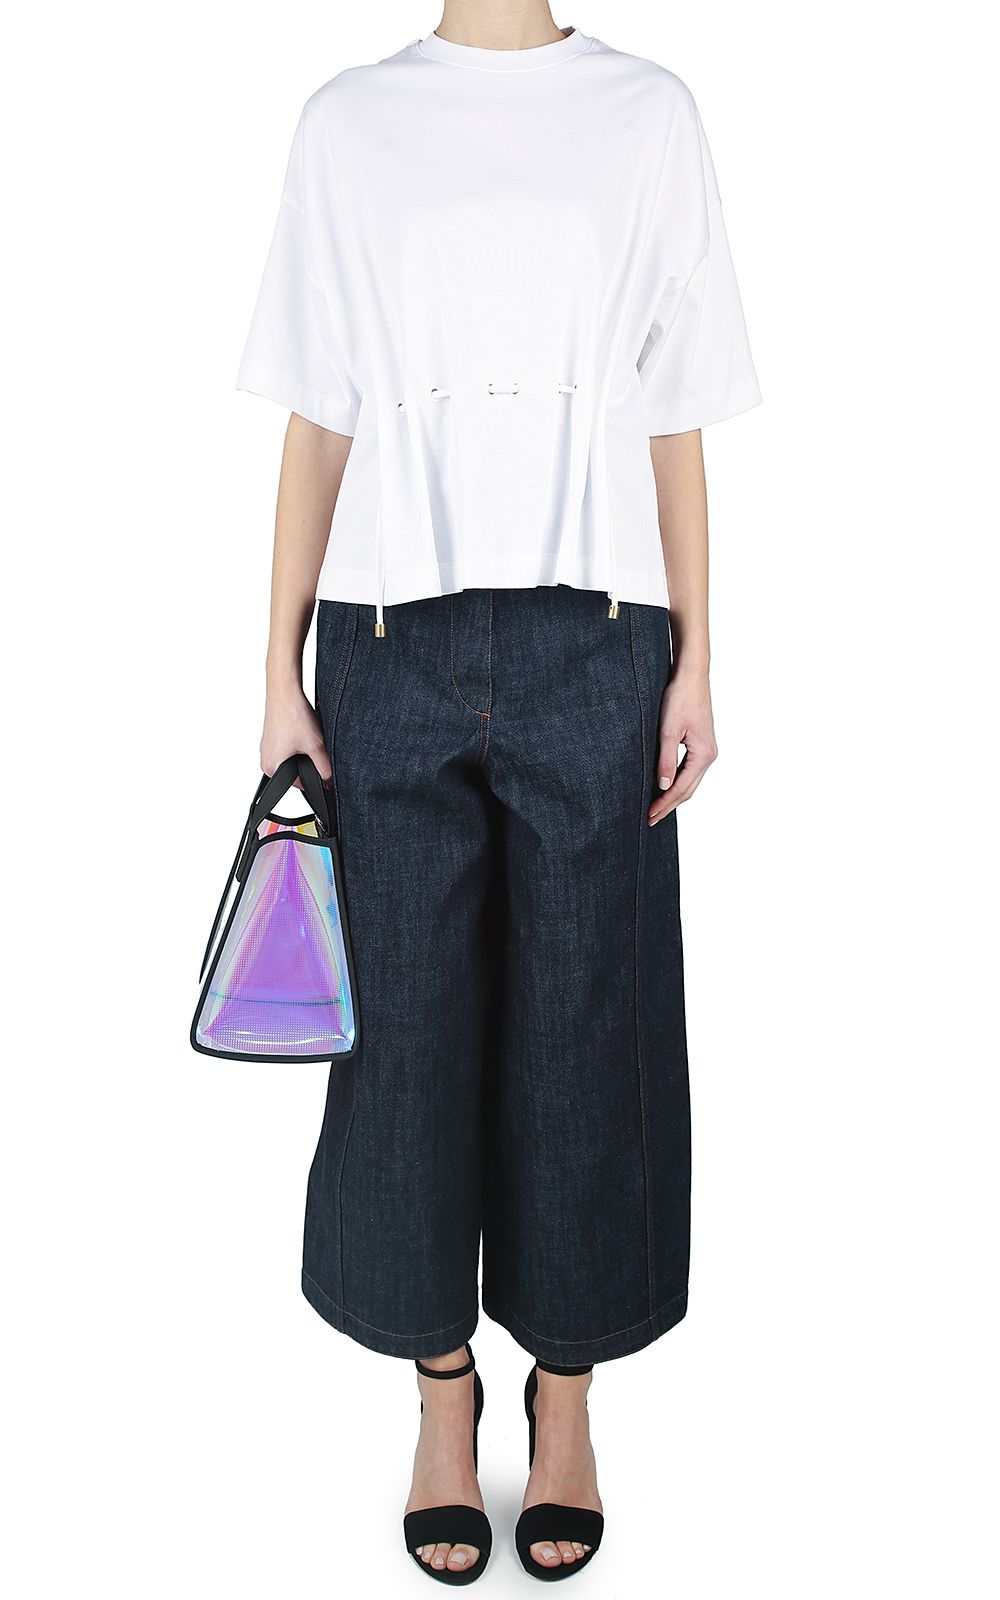 Kenzo - Kenzo Cinched Oversized Cotton T-shirt - Bianco, Women's Short ...